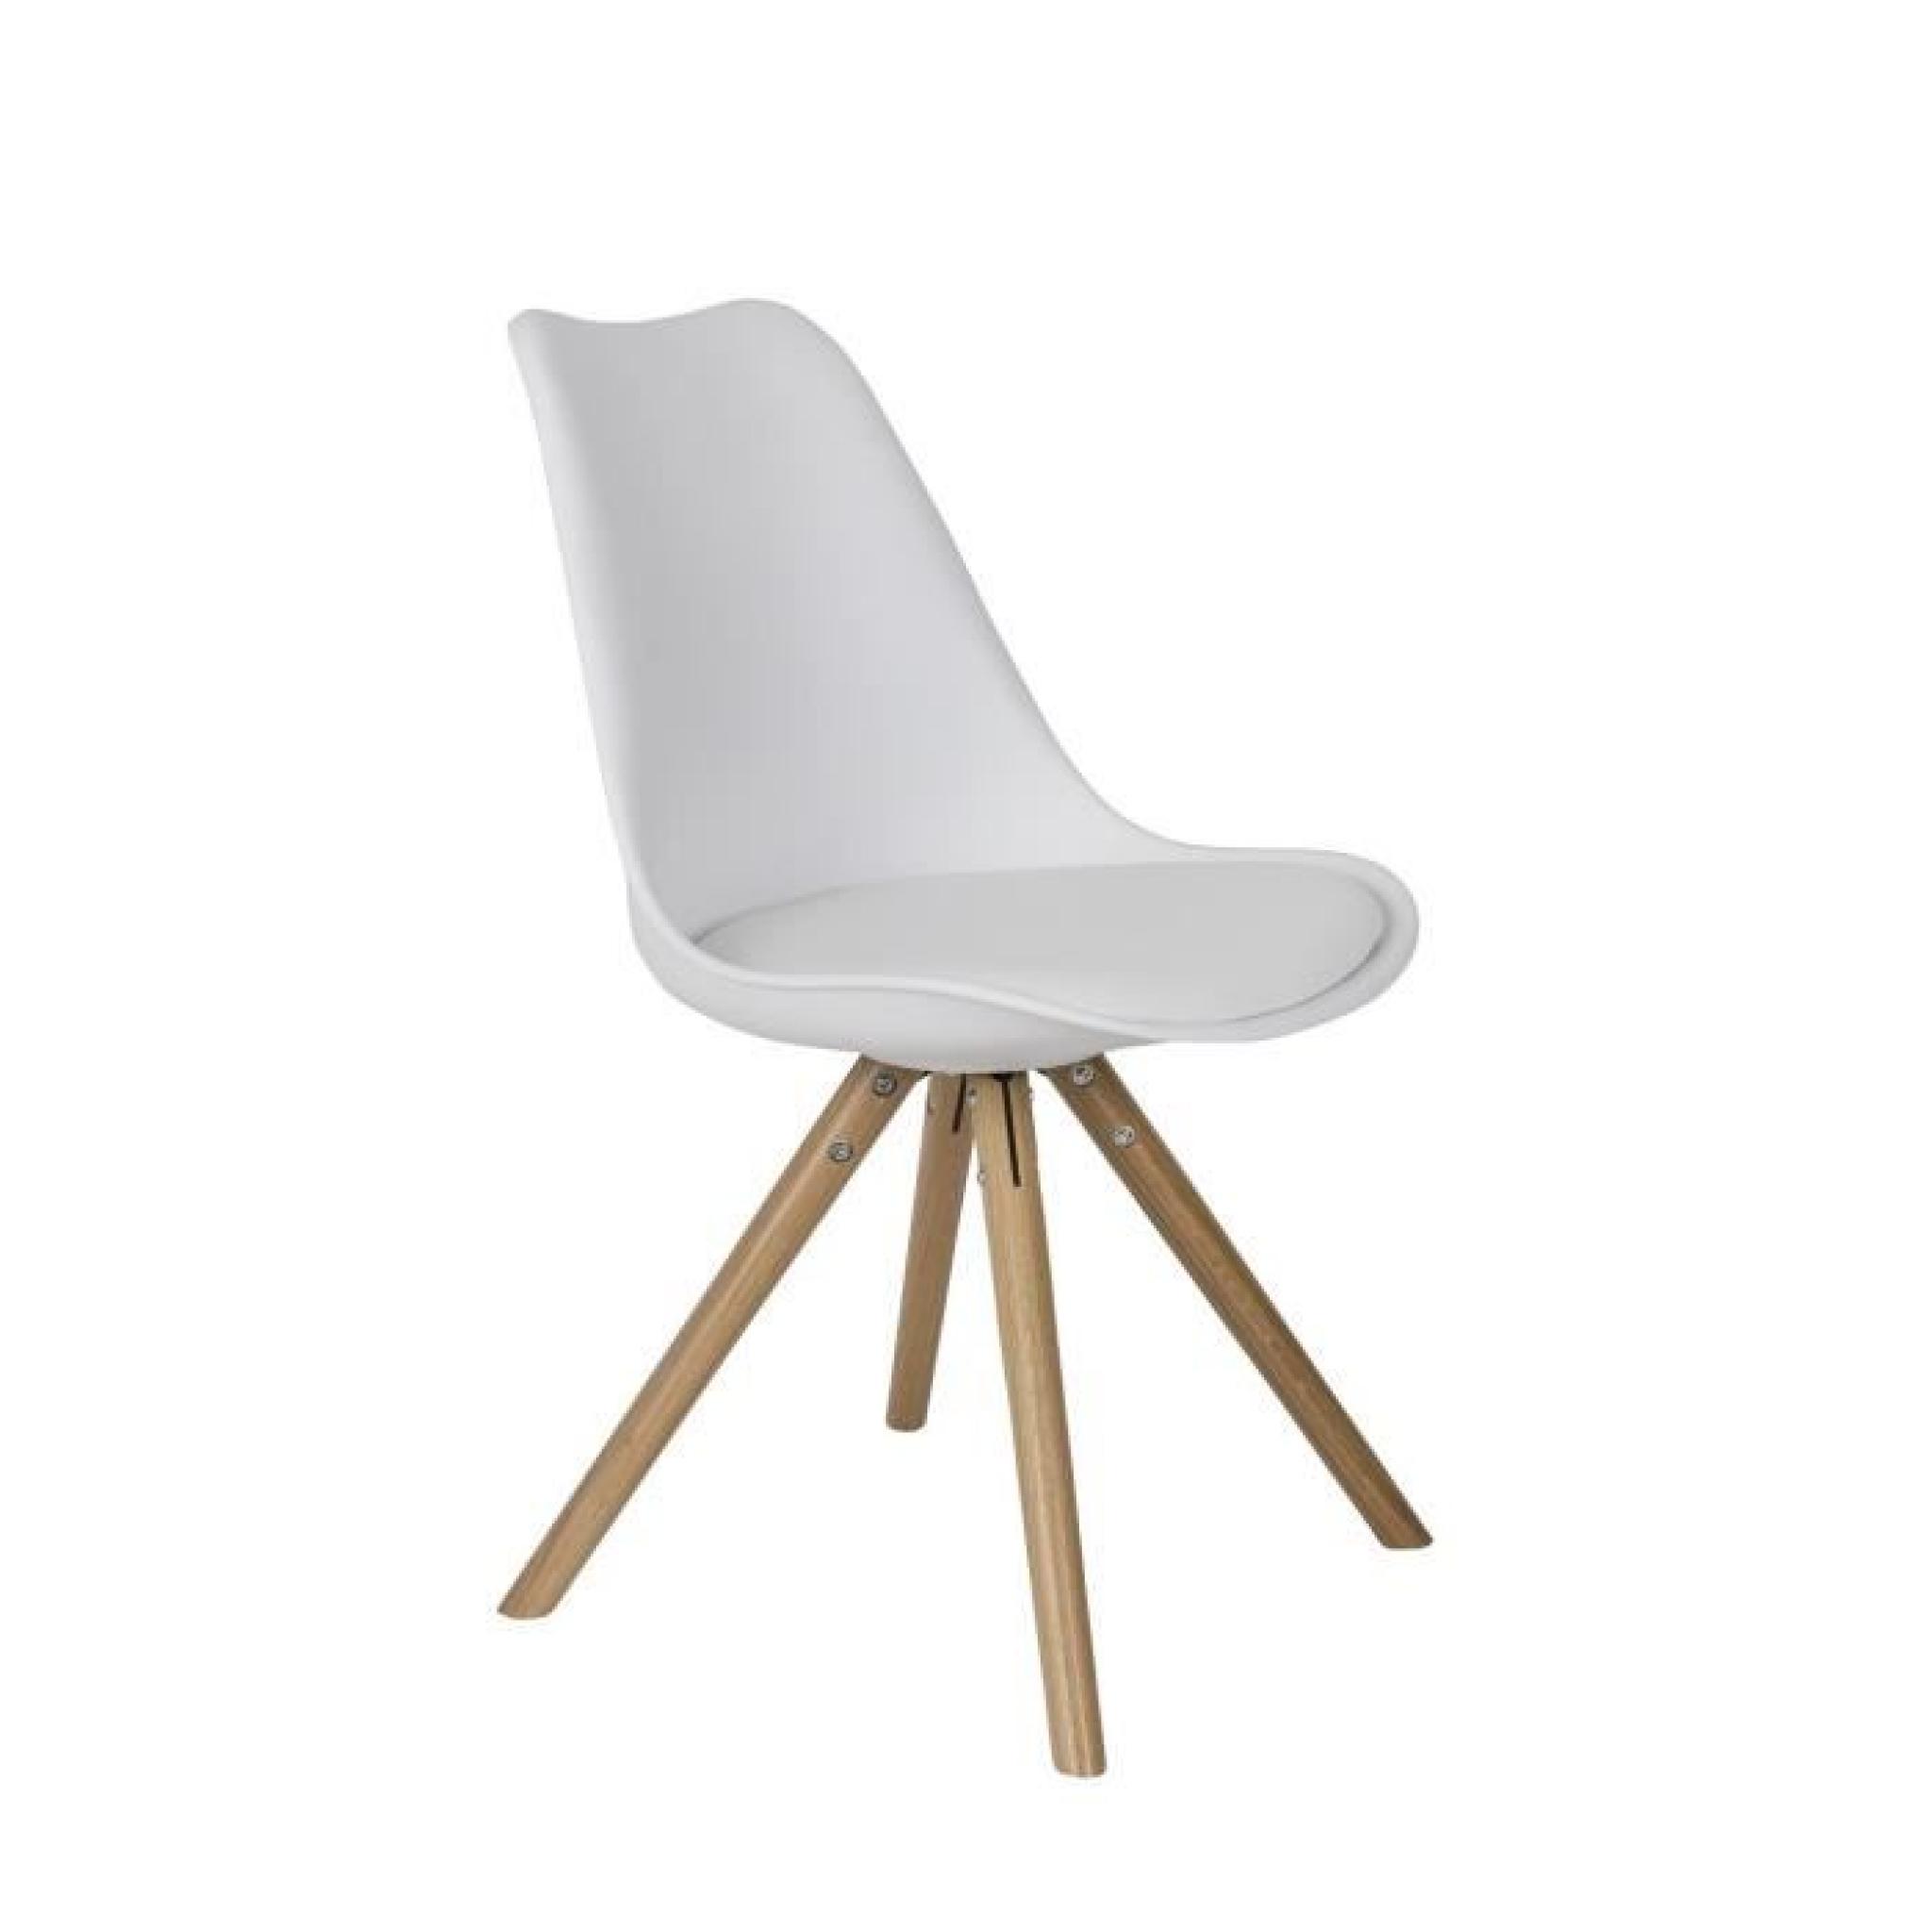 2 Chaises design PRESS bois et blanc - Lot de deux - zuiver pas cher